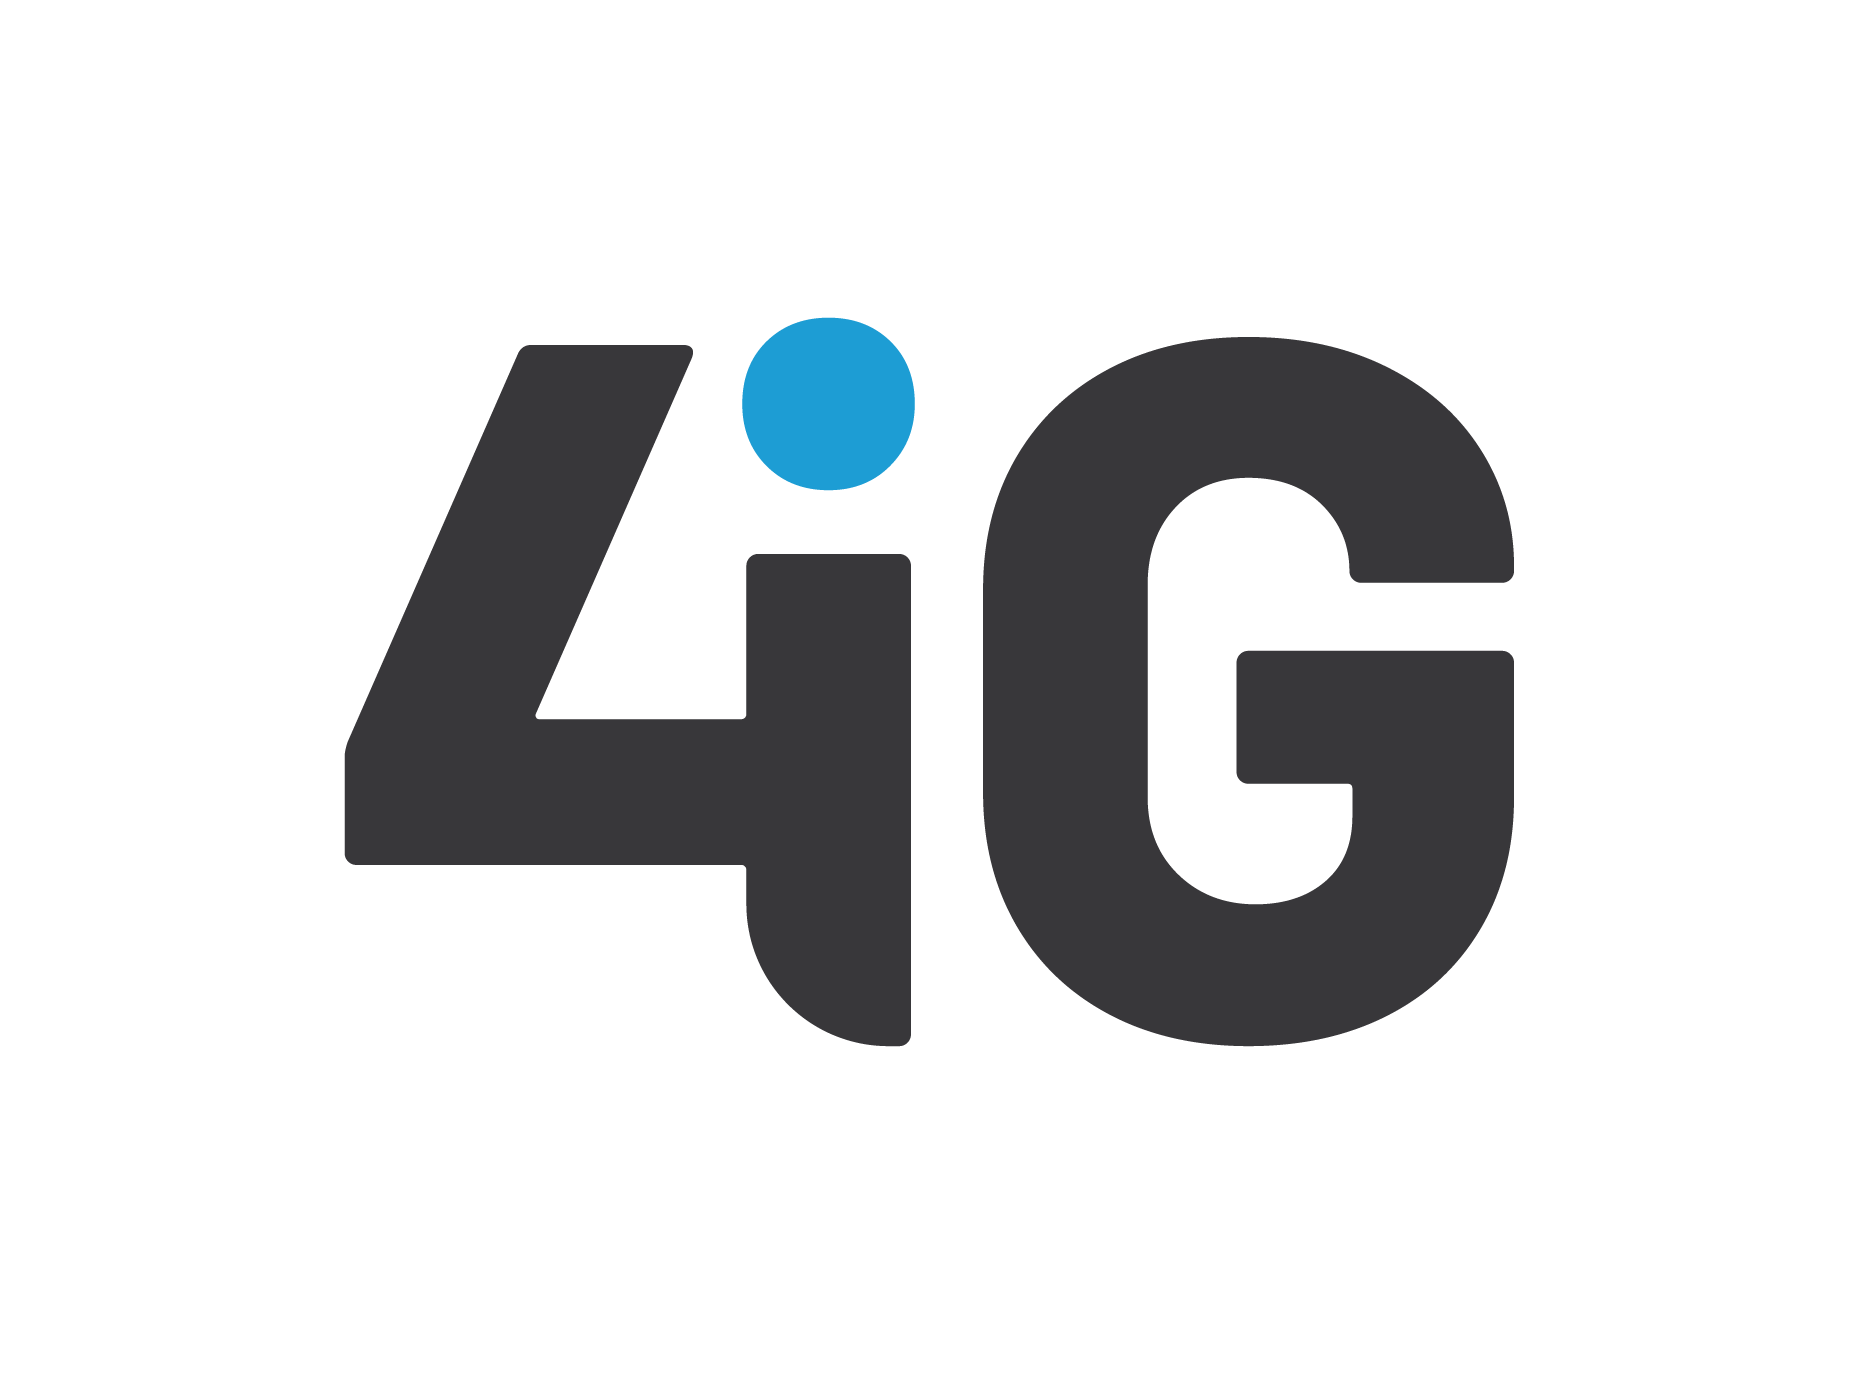 A 4iG több mint 25 éve jelen van az iparági és iparágfüggetlen innovatív technológiák területén, az ICT piac változásainak és igényeinek megfelelve folyamatosan bővíti szolgáltatásait, szakemberállományát és portfólióját.